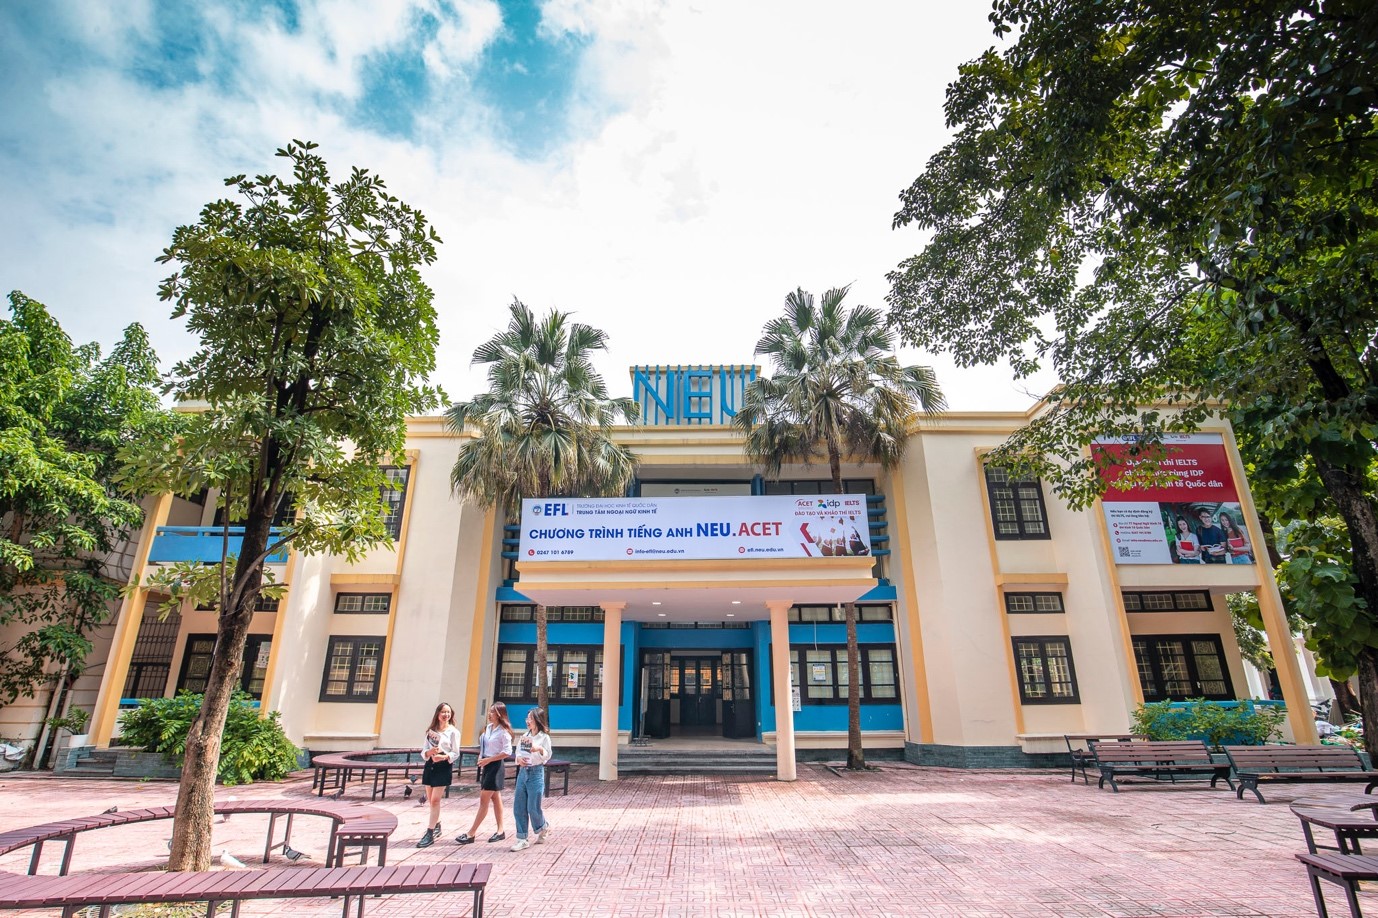 Trường Đại học Kinh tế Quốc dân chính thức trở thành địa điểm tổ chức kỳ thi trên máy tính các môn ACCA theo yêu cầu